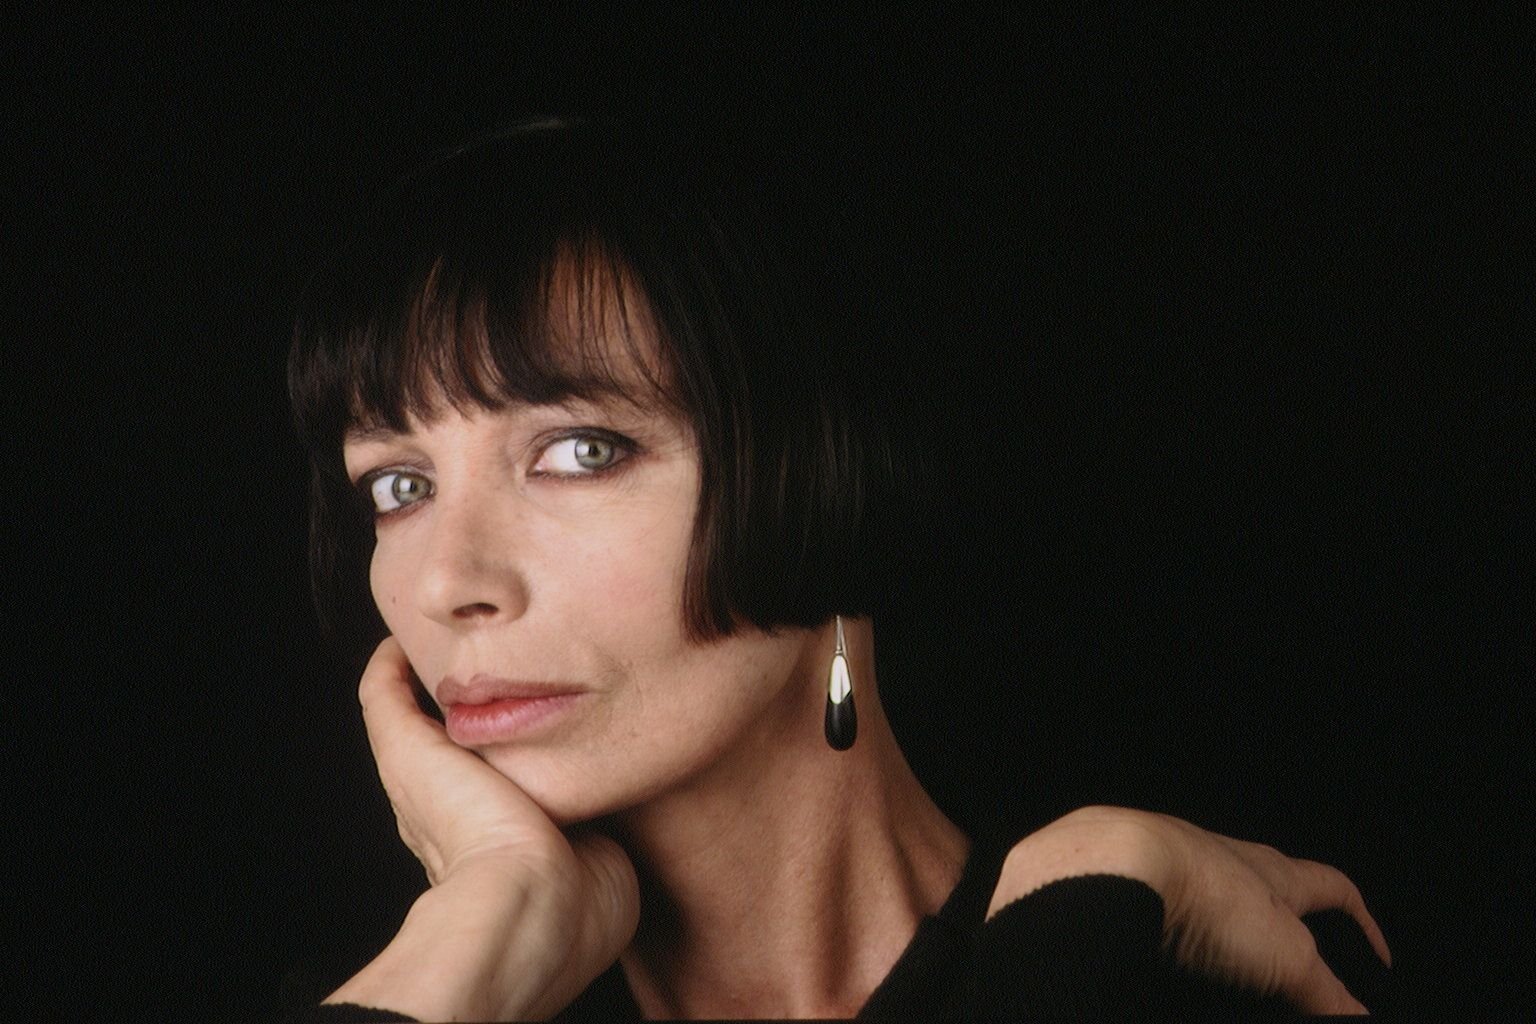 La comédienne et chanteuse Marie Laforêt. | Photo : Getty Images